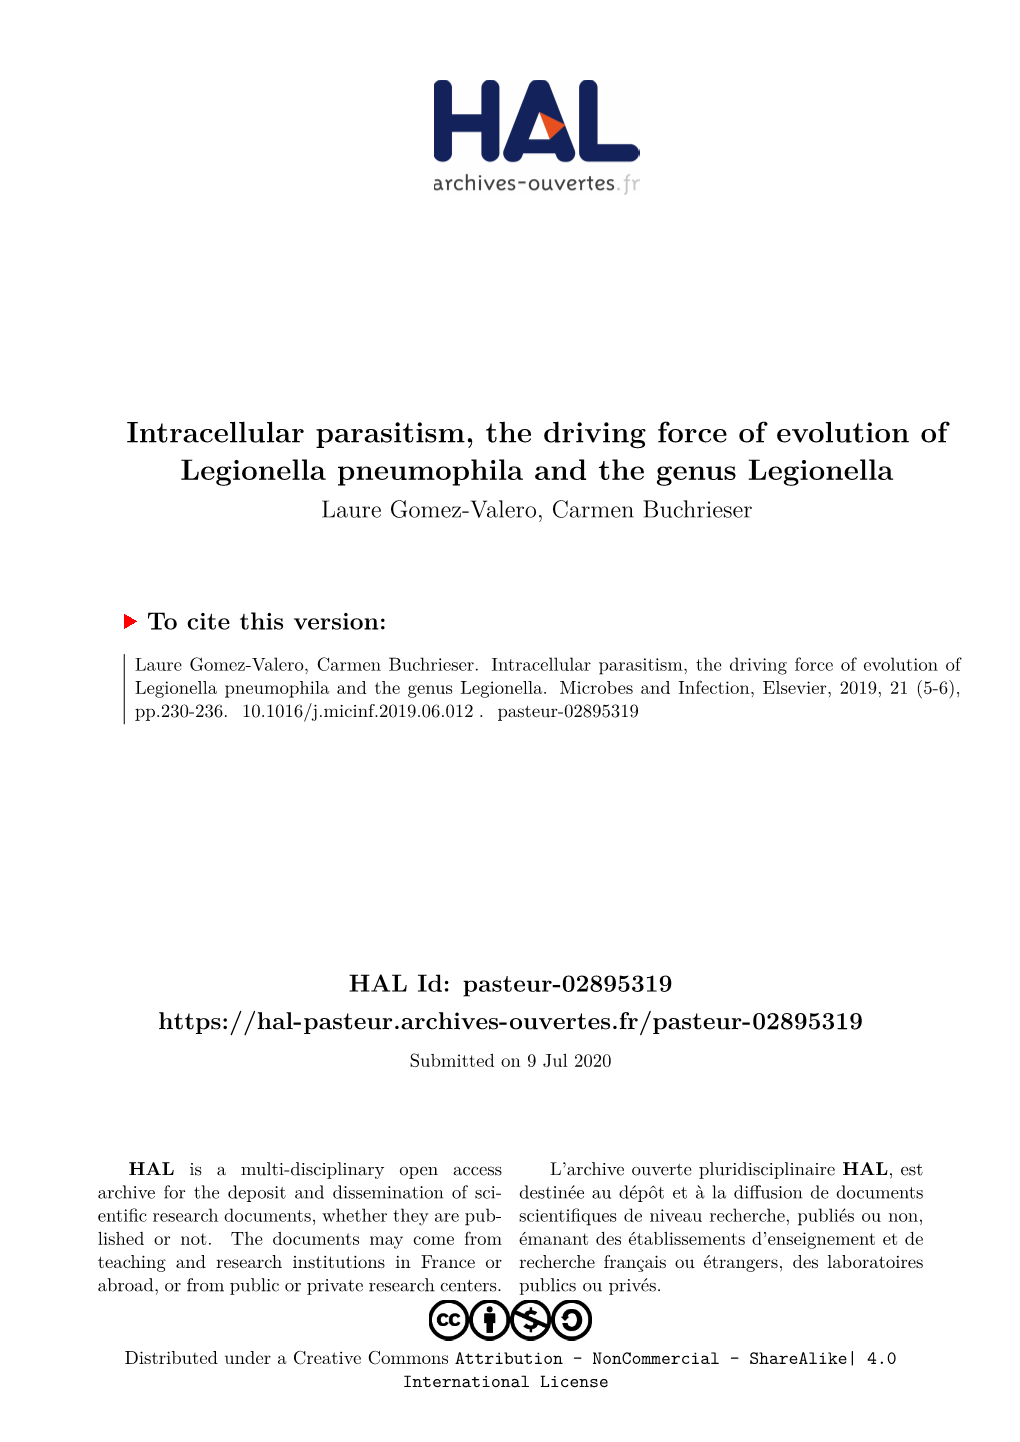 Intracellular Parasitism, the Driving Force of Evolution of Legionella Pneumophila and the Genus Legionella Laure Gomez-Valero, Carmen Buchrieser